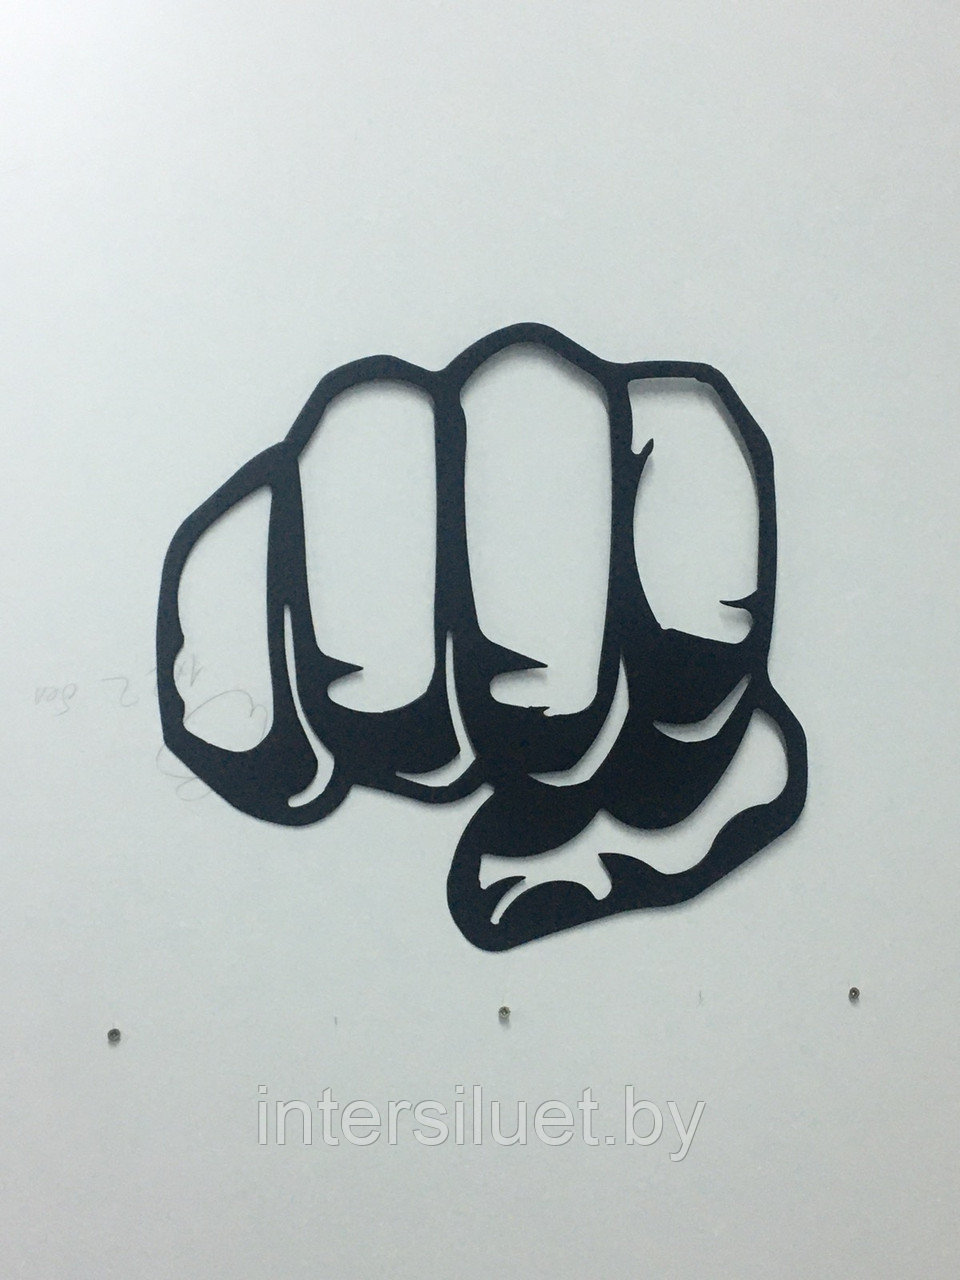 Металлическое декоративное панно КУЛАК  40х30см цвет: черный муар и графит